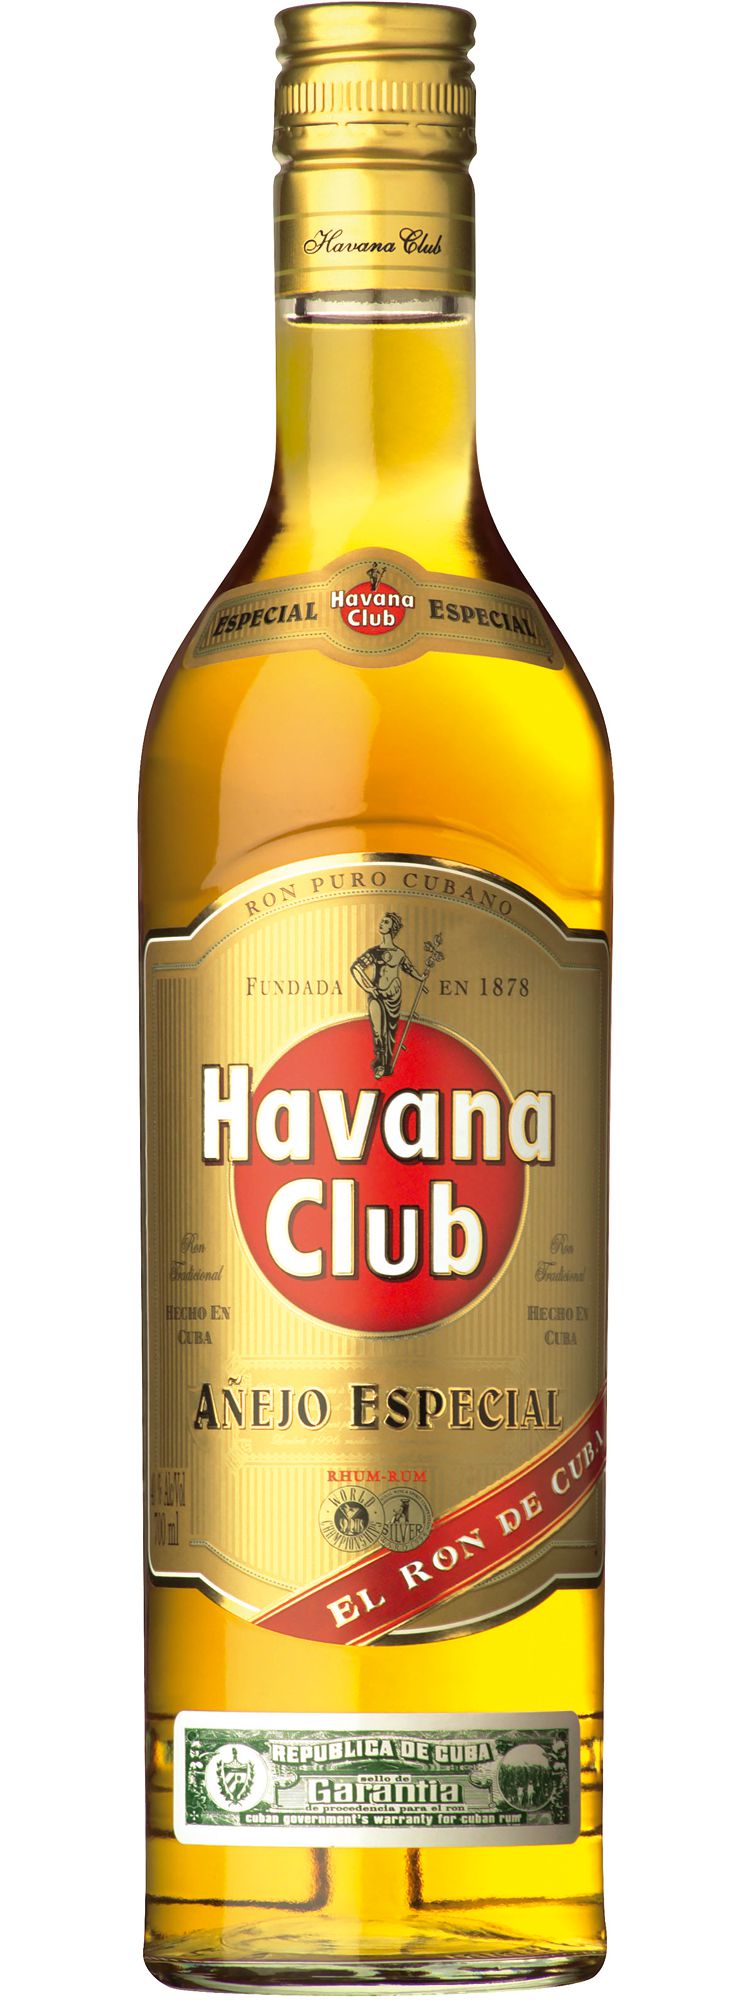 Havana Club Rum 3 years